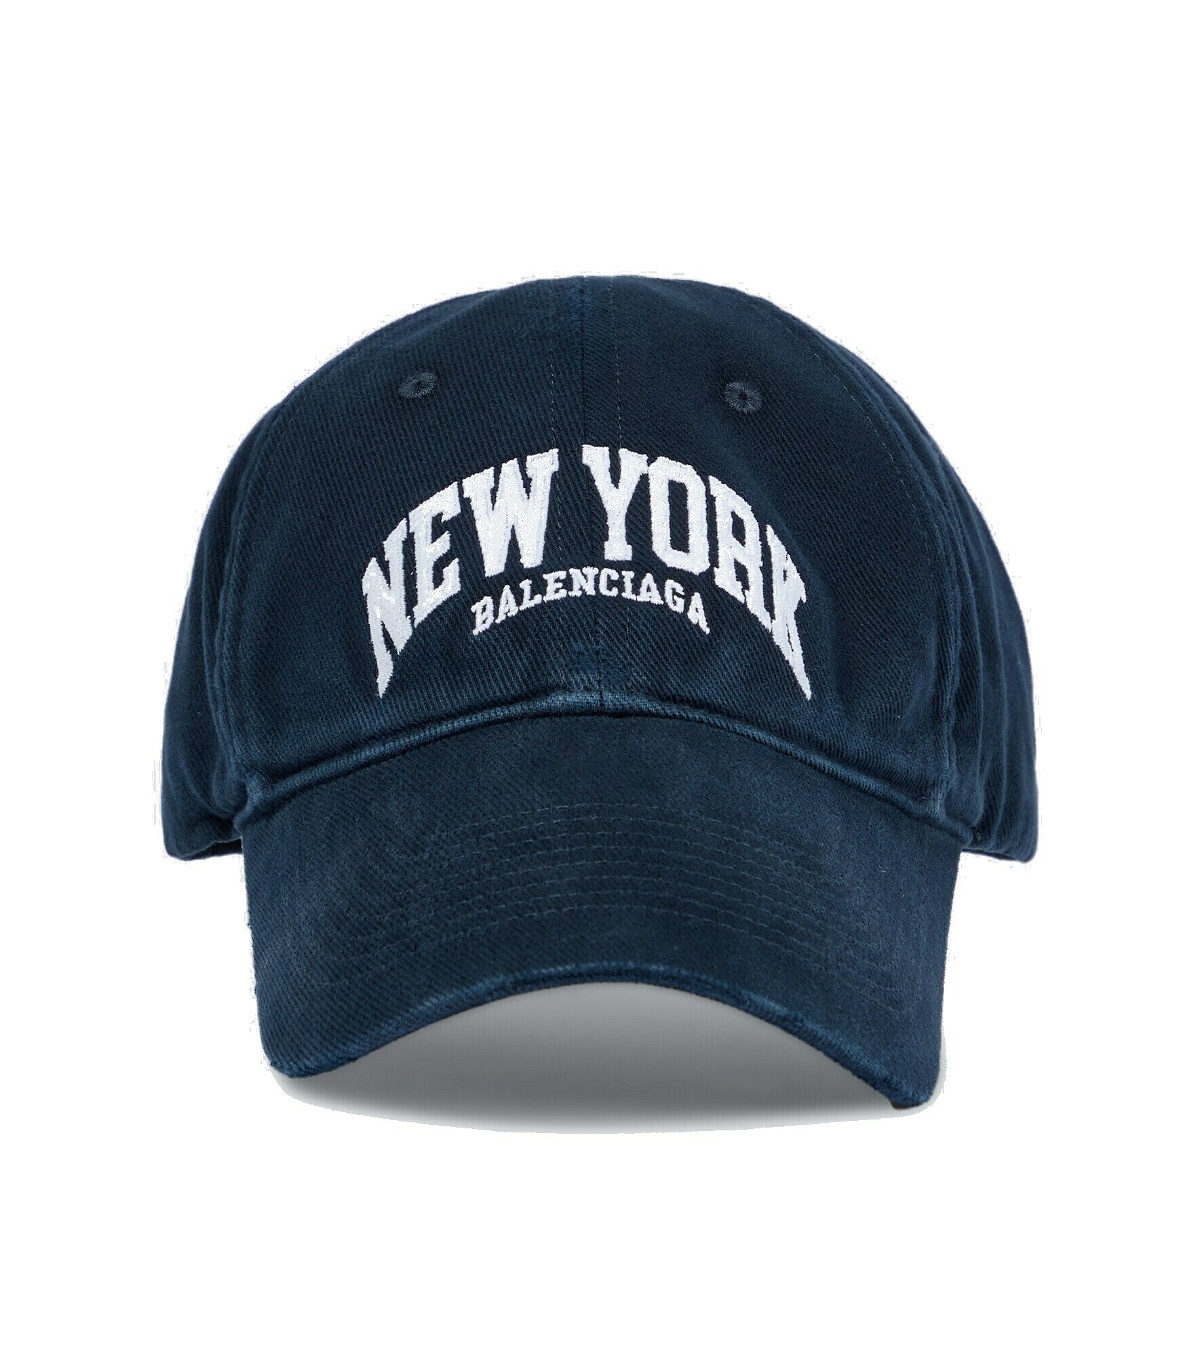 Photo: Balenciaga - Cities New York baseball cap